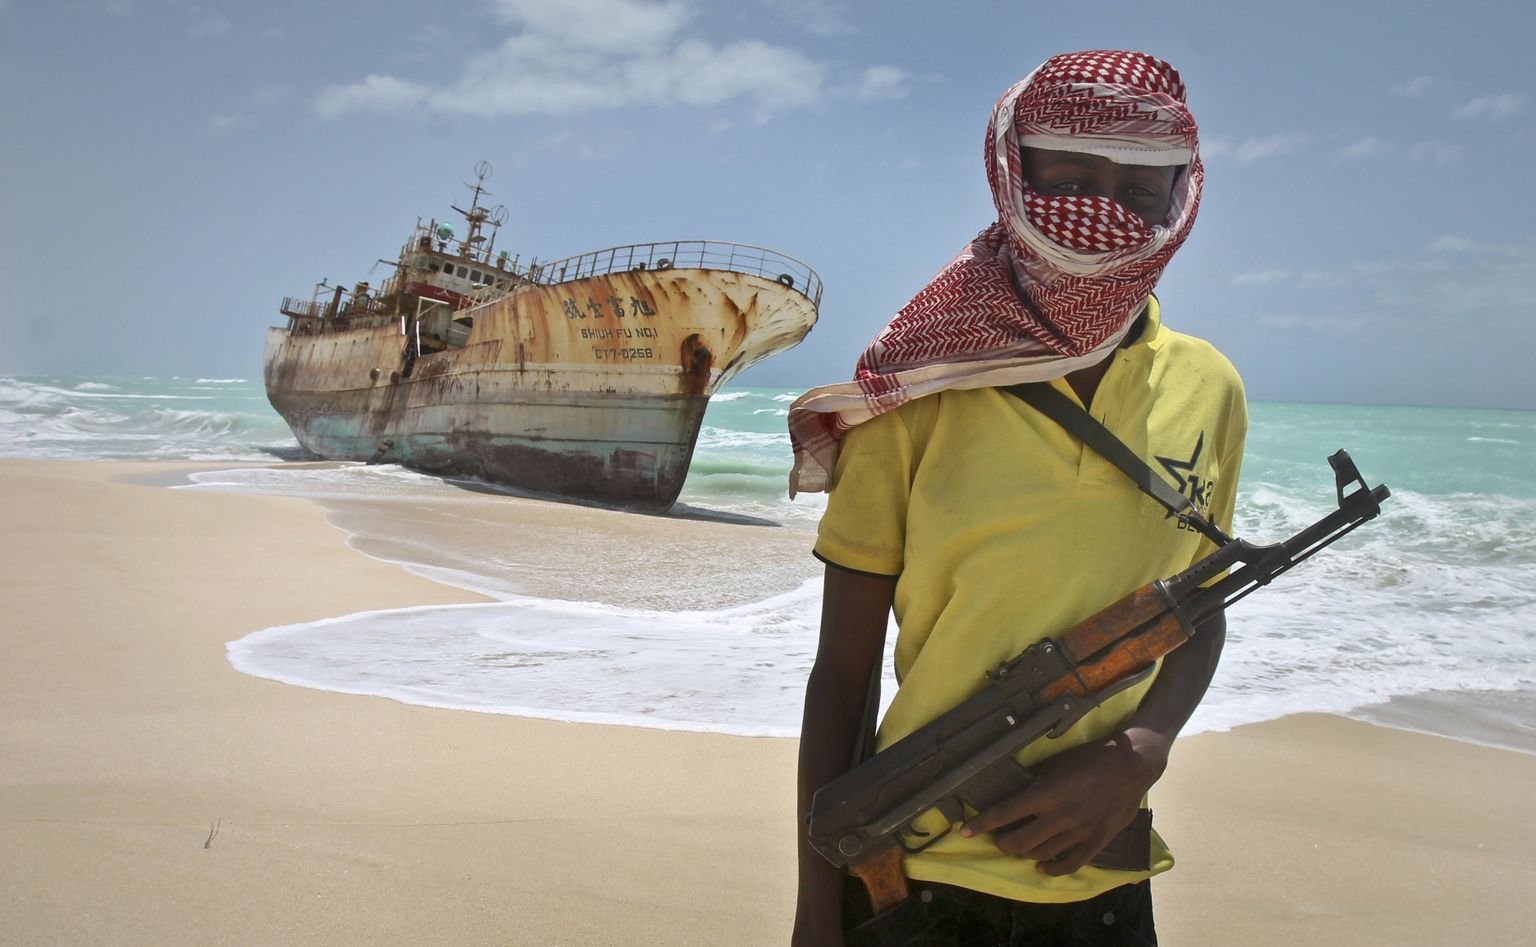 Somaalia piraat 2012. aastal. Endise piraatluse Meka hiilgeaeg on tänaseks ammu möödas.